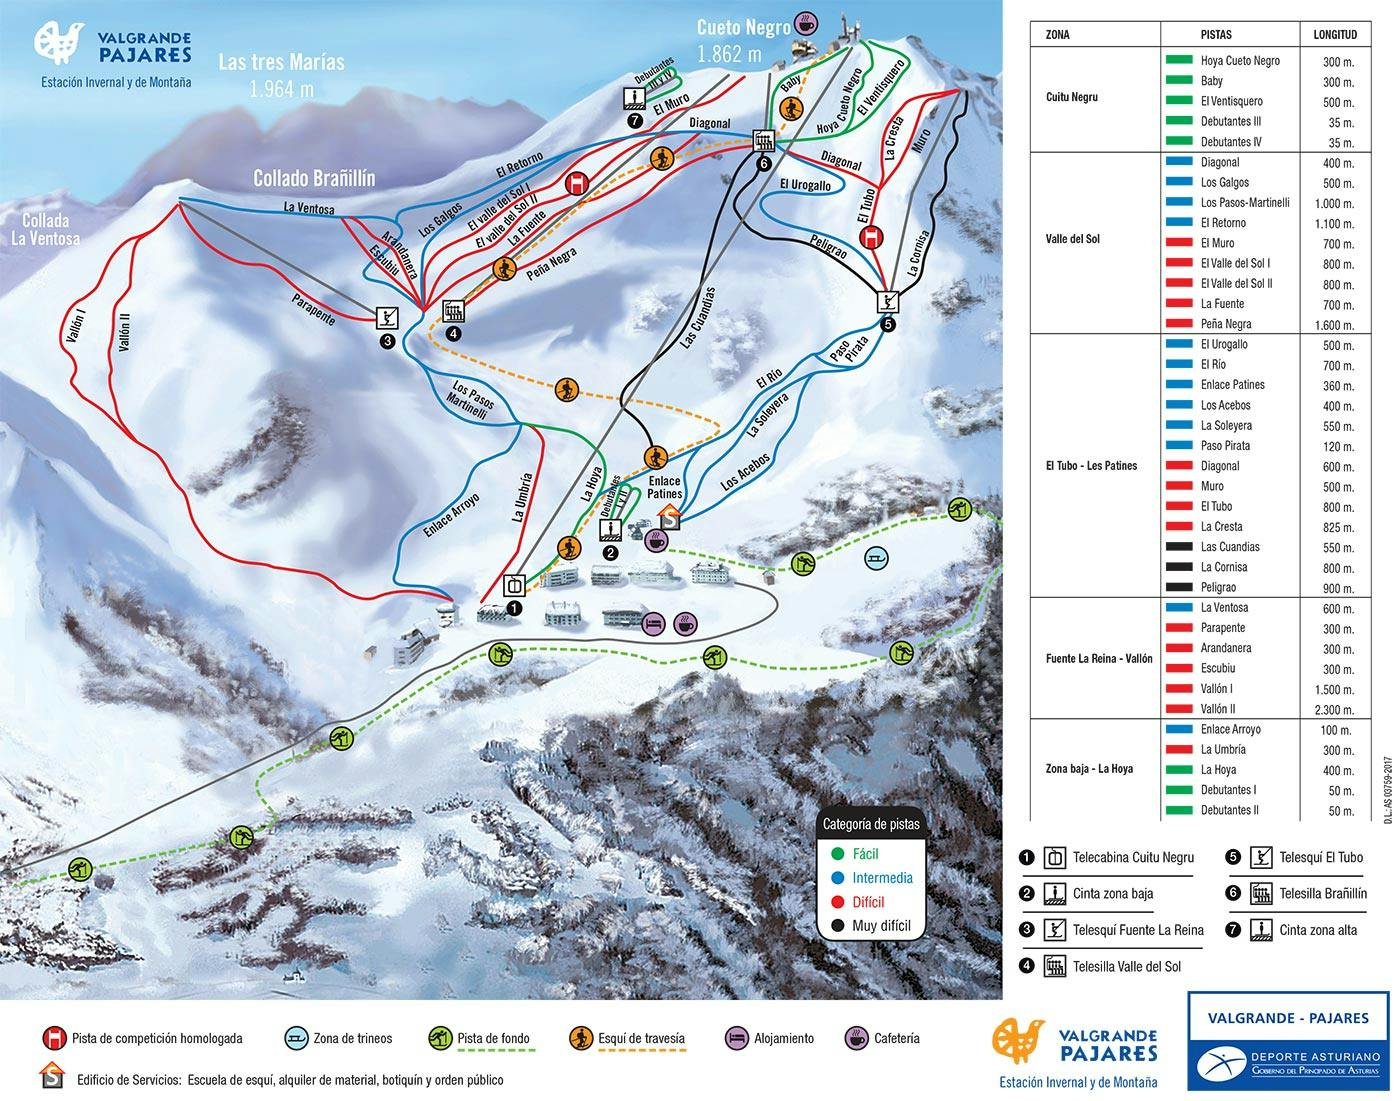 Copitos de Nieve - Estaciones de esquí, ski, snowboard - Mapa de la estación Valgrande-Pajares